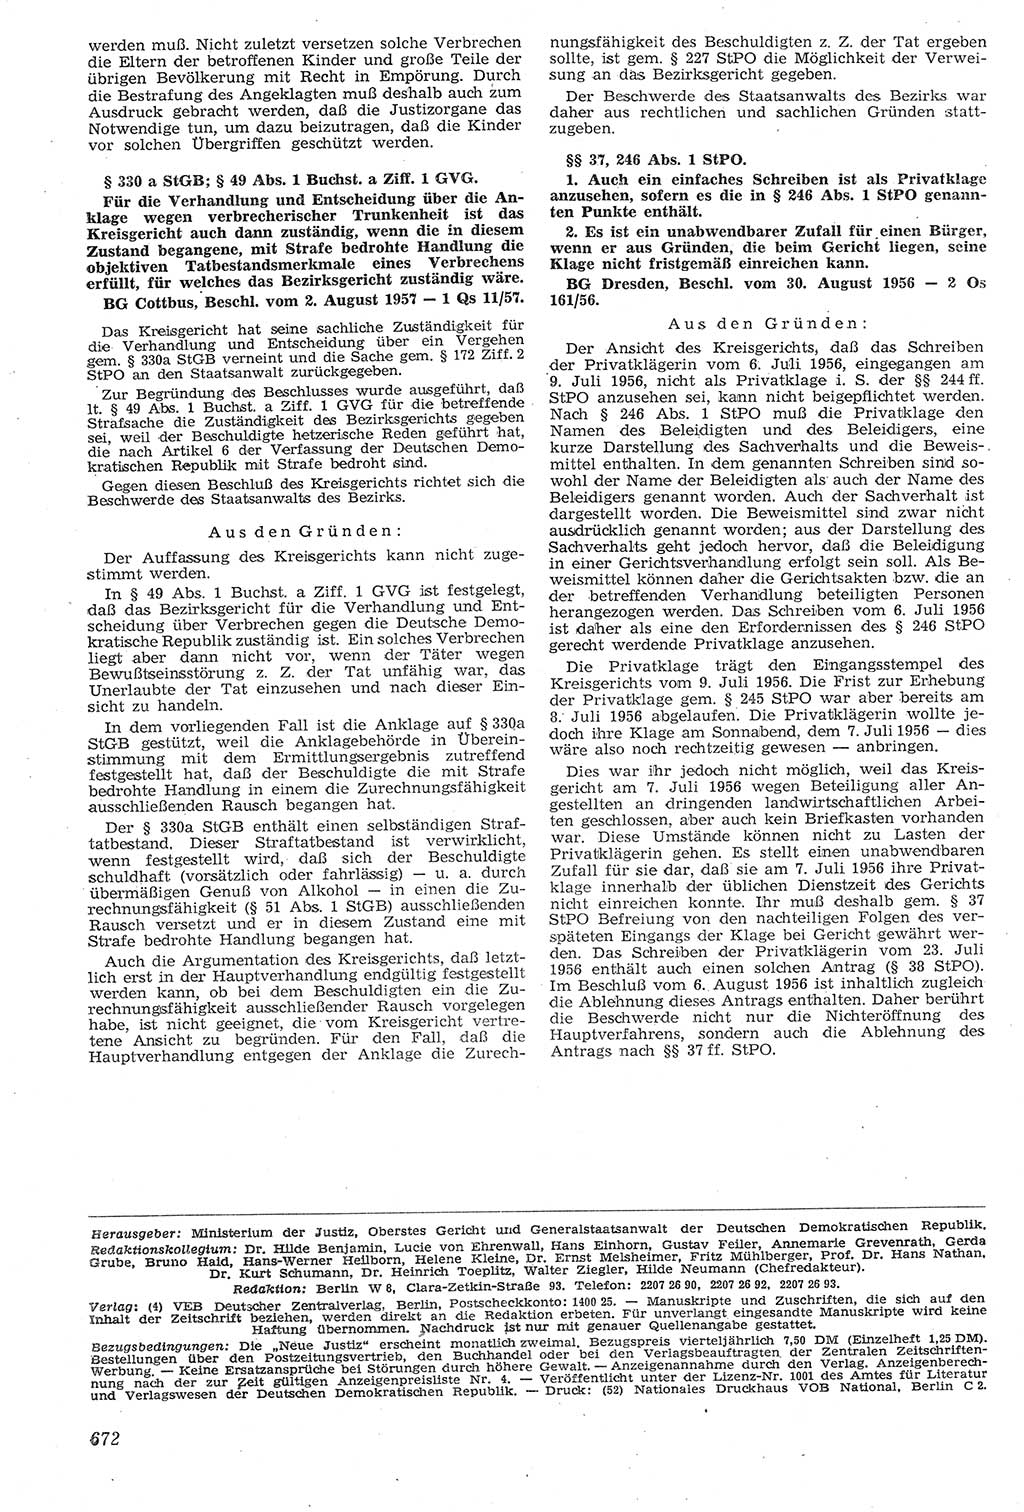 Neue Justiz (NJ), Zeitschrift für Recht und Rechtswissenschaft [Deutsche Demokratische Republik (DDR)], 11. Jahrgang 1957, Seite 672 (NJ DDR 1957, S. 672)